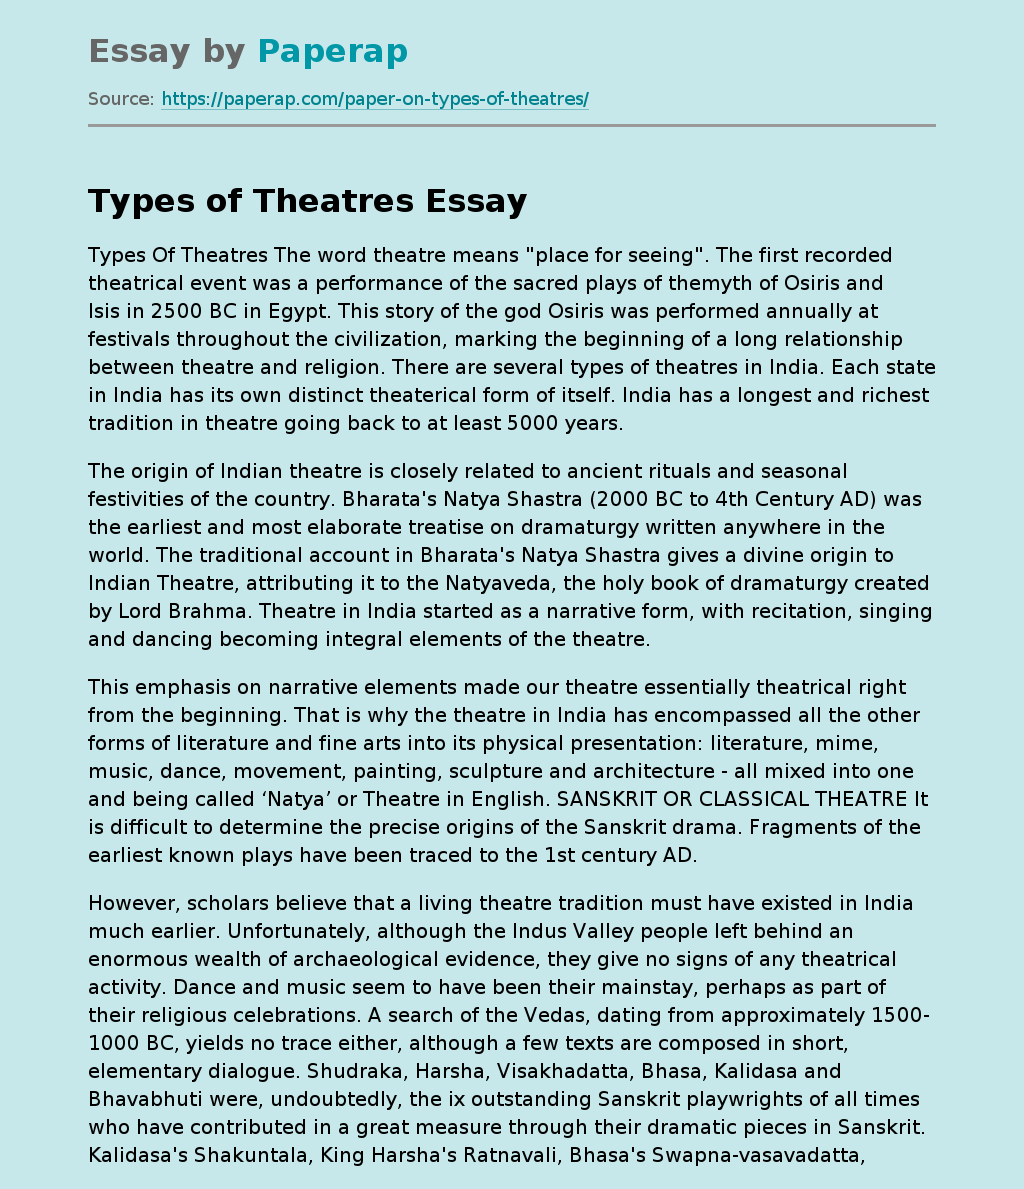 Types of Theatres